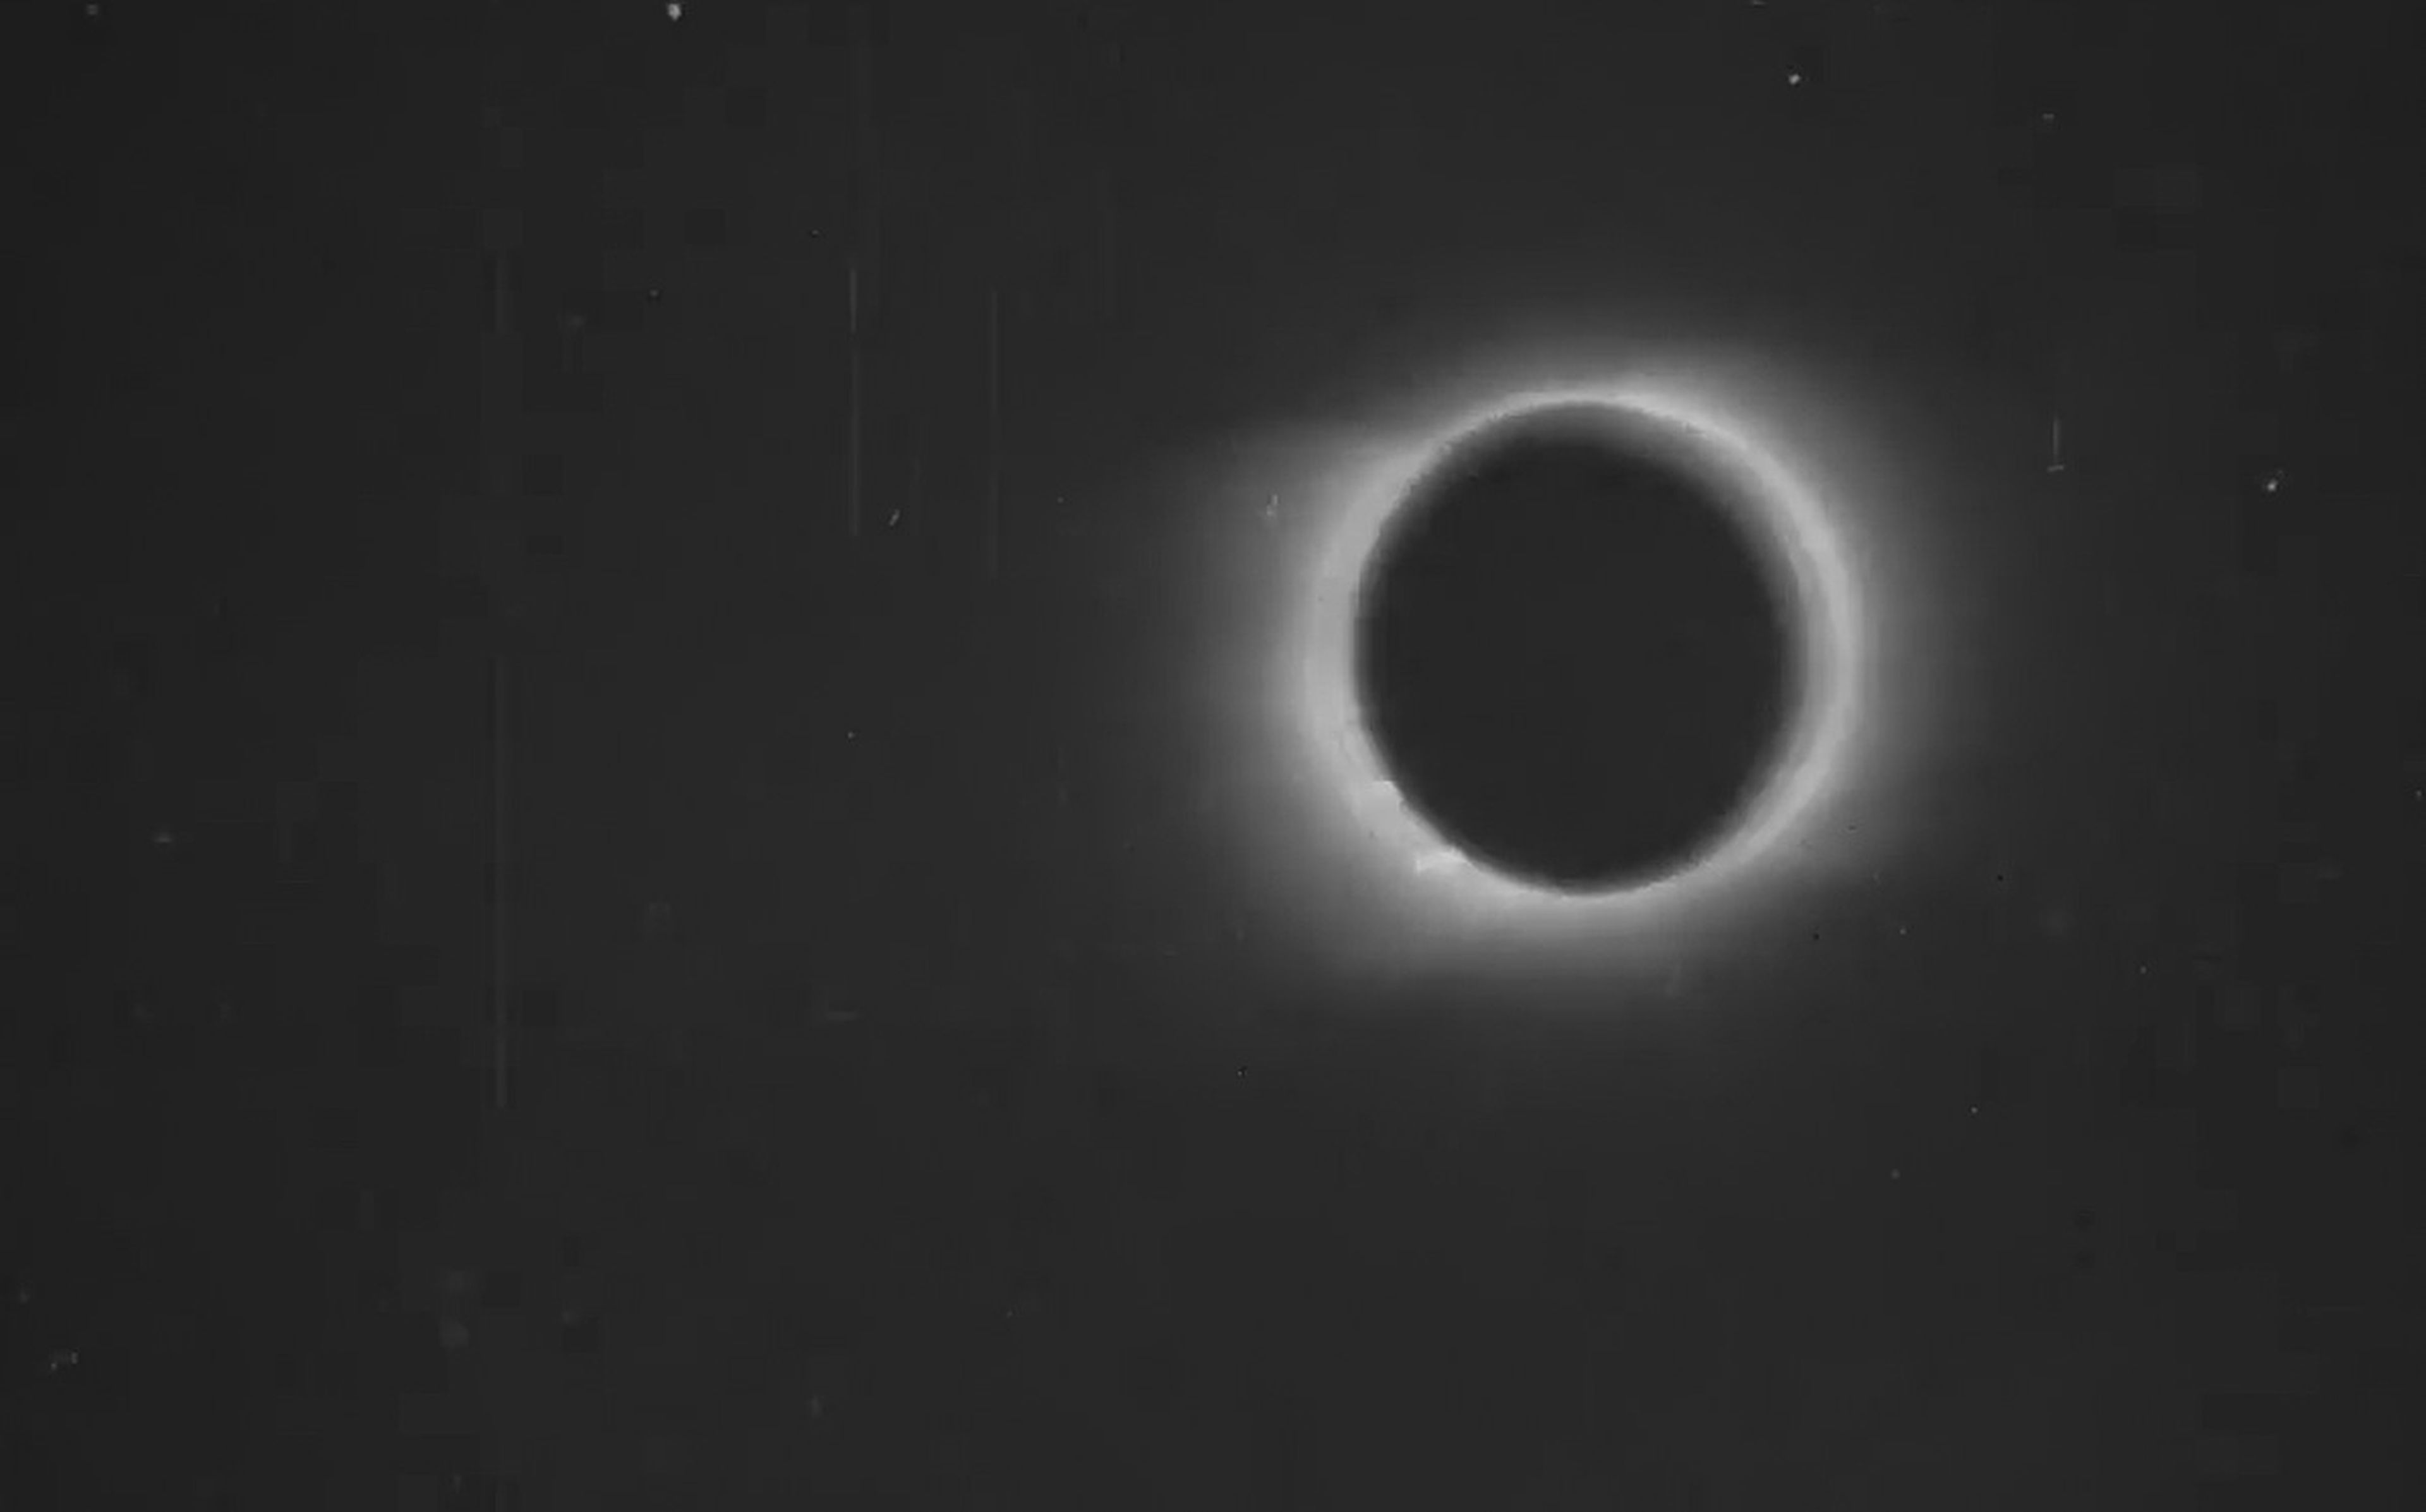 El primer vídeo de un eclipse, grabado en 1900, se restaura a resolución 4K